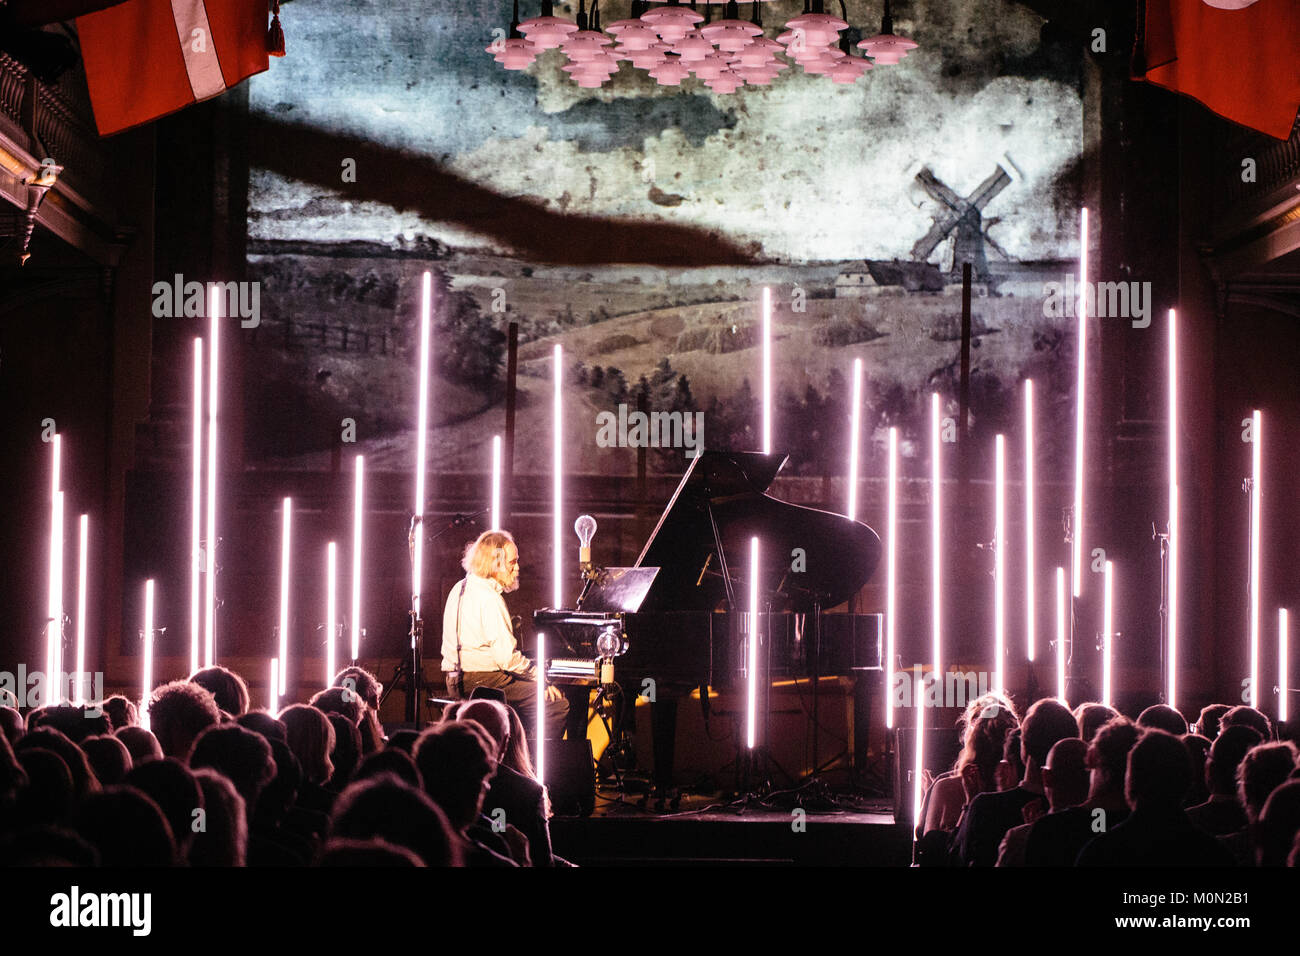 Le compositeur et pianiste ukrainien Lubomyr Melnyk effectue un concert live au festival de musique Festival danois Frost 2016 à Copenhague. Le Danemark, 24/02 2016. Banque D'Images